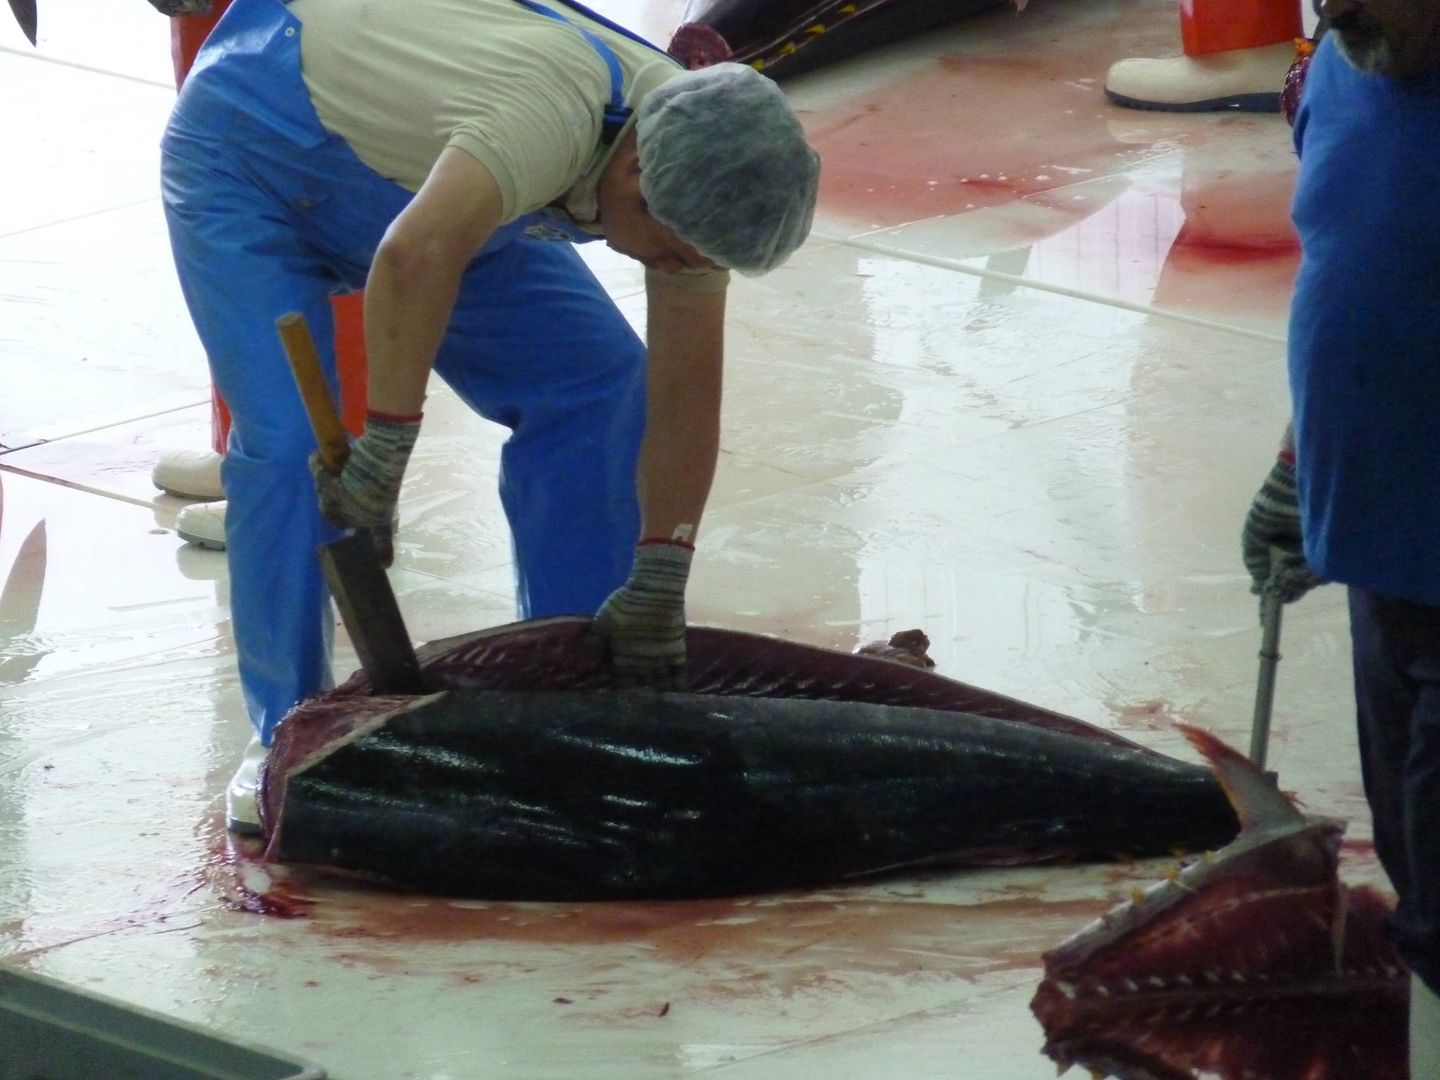 Despiece o ronqueo de un atún en la localidad gaditana de Barbate. (M. García Rey / ICIJ)